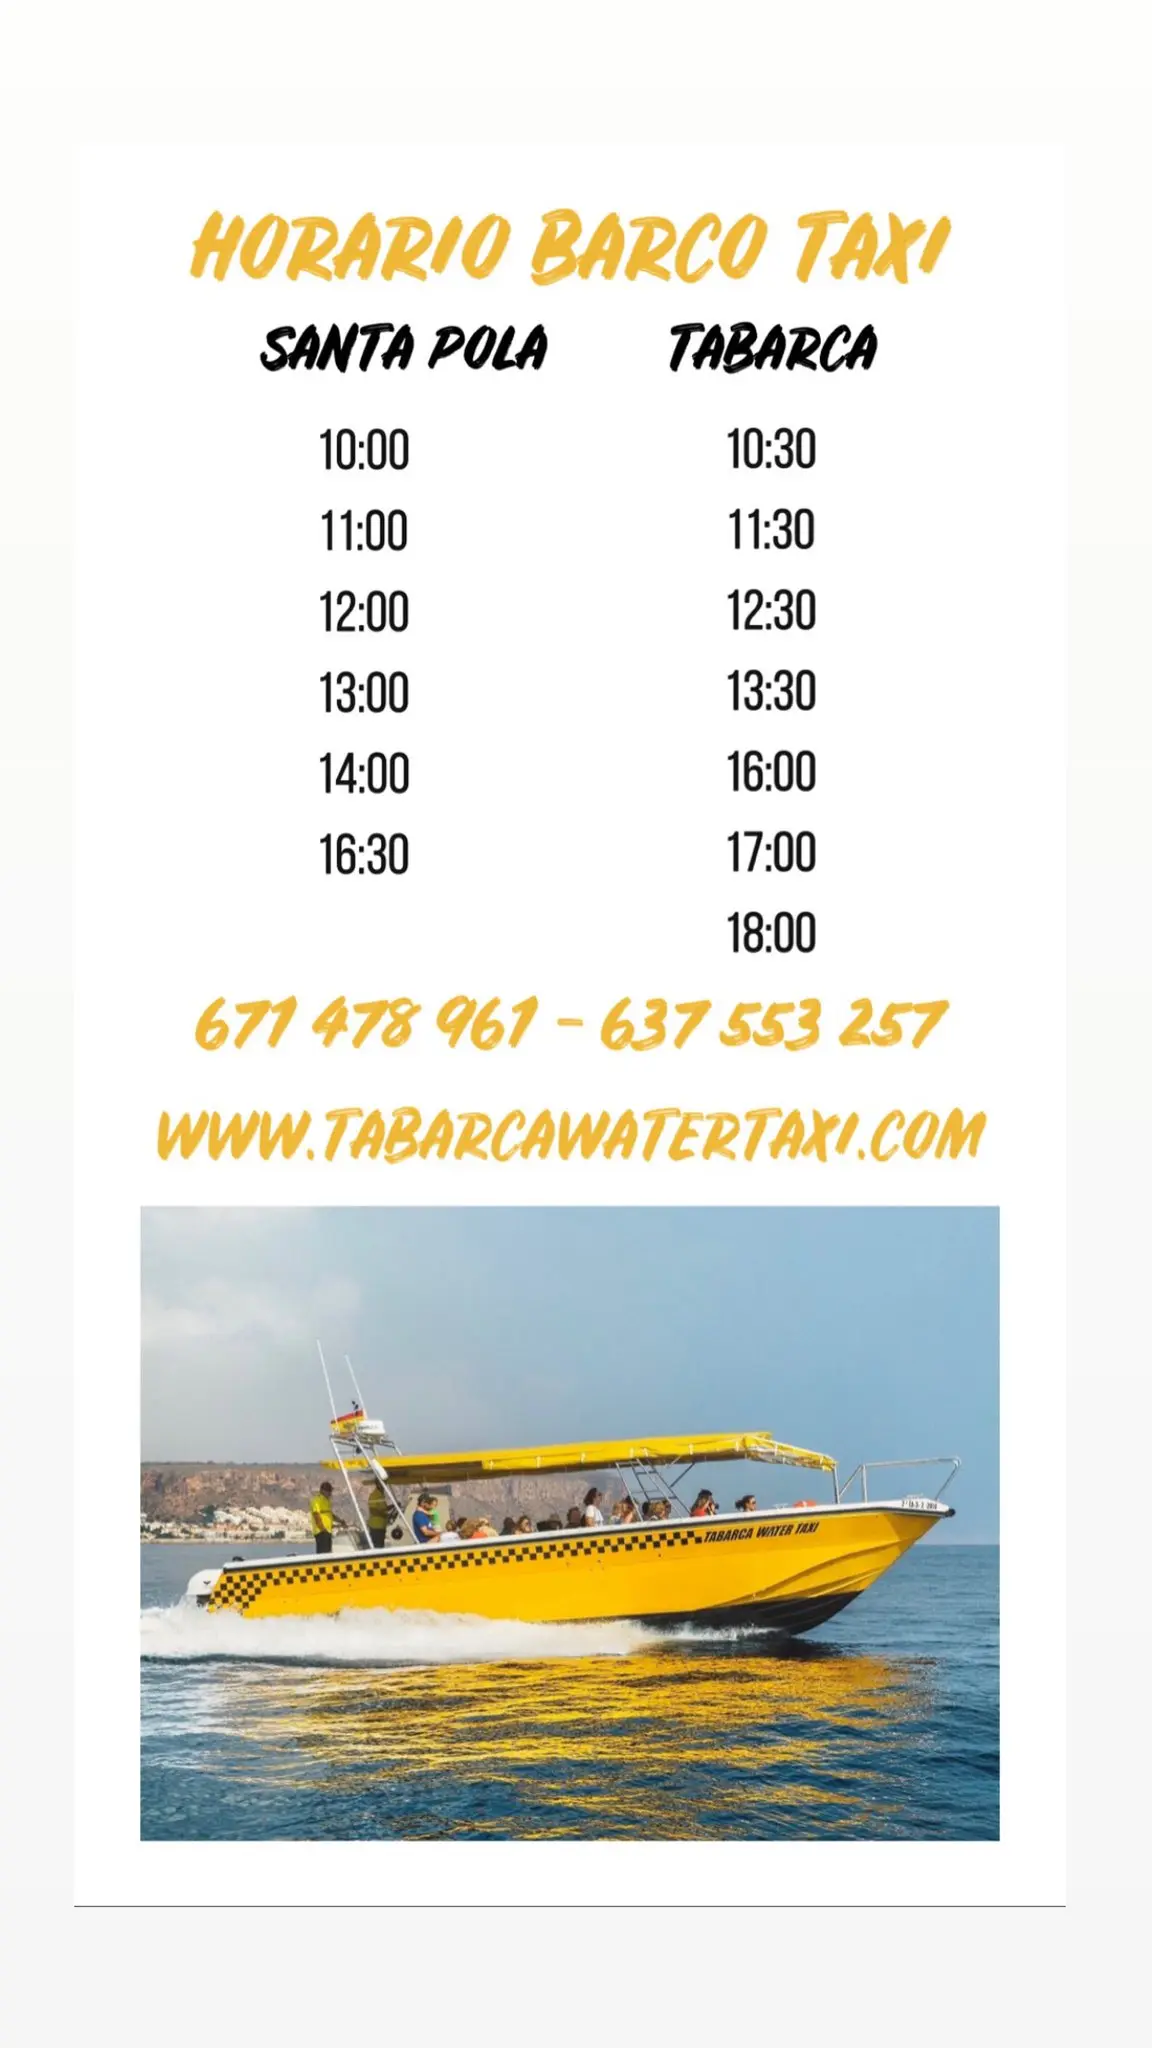 barco taxi tabarca horario - Cuánto tarda el barco a Tabarca